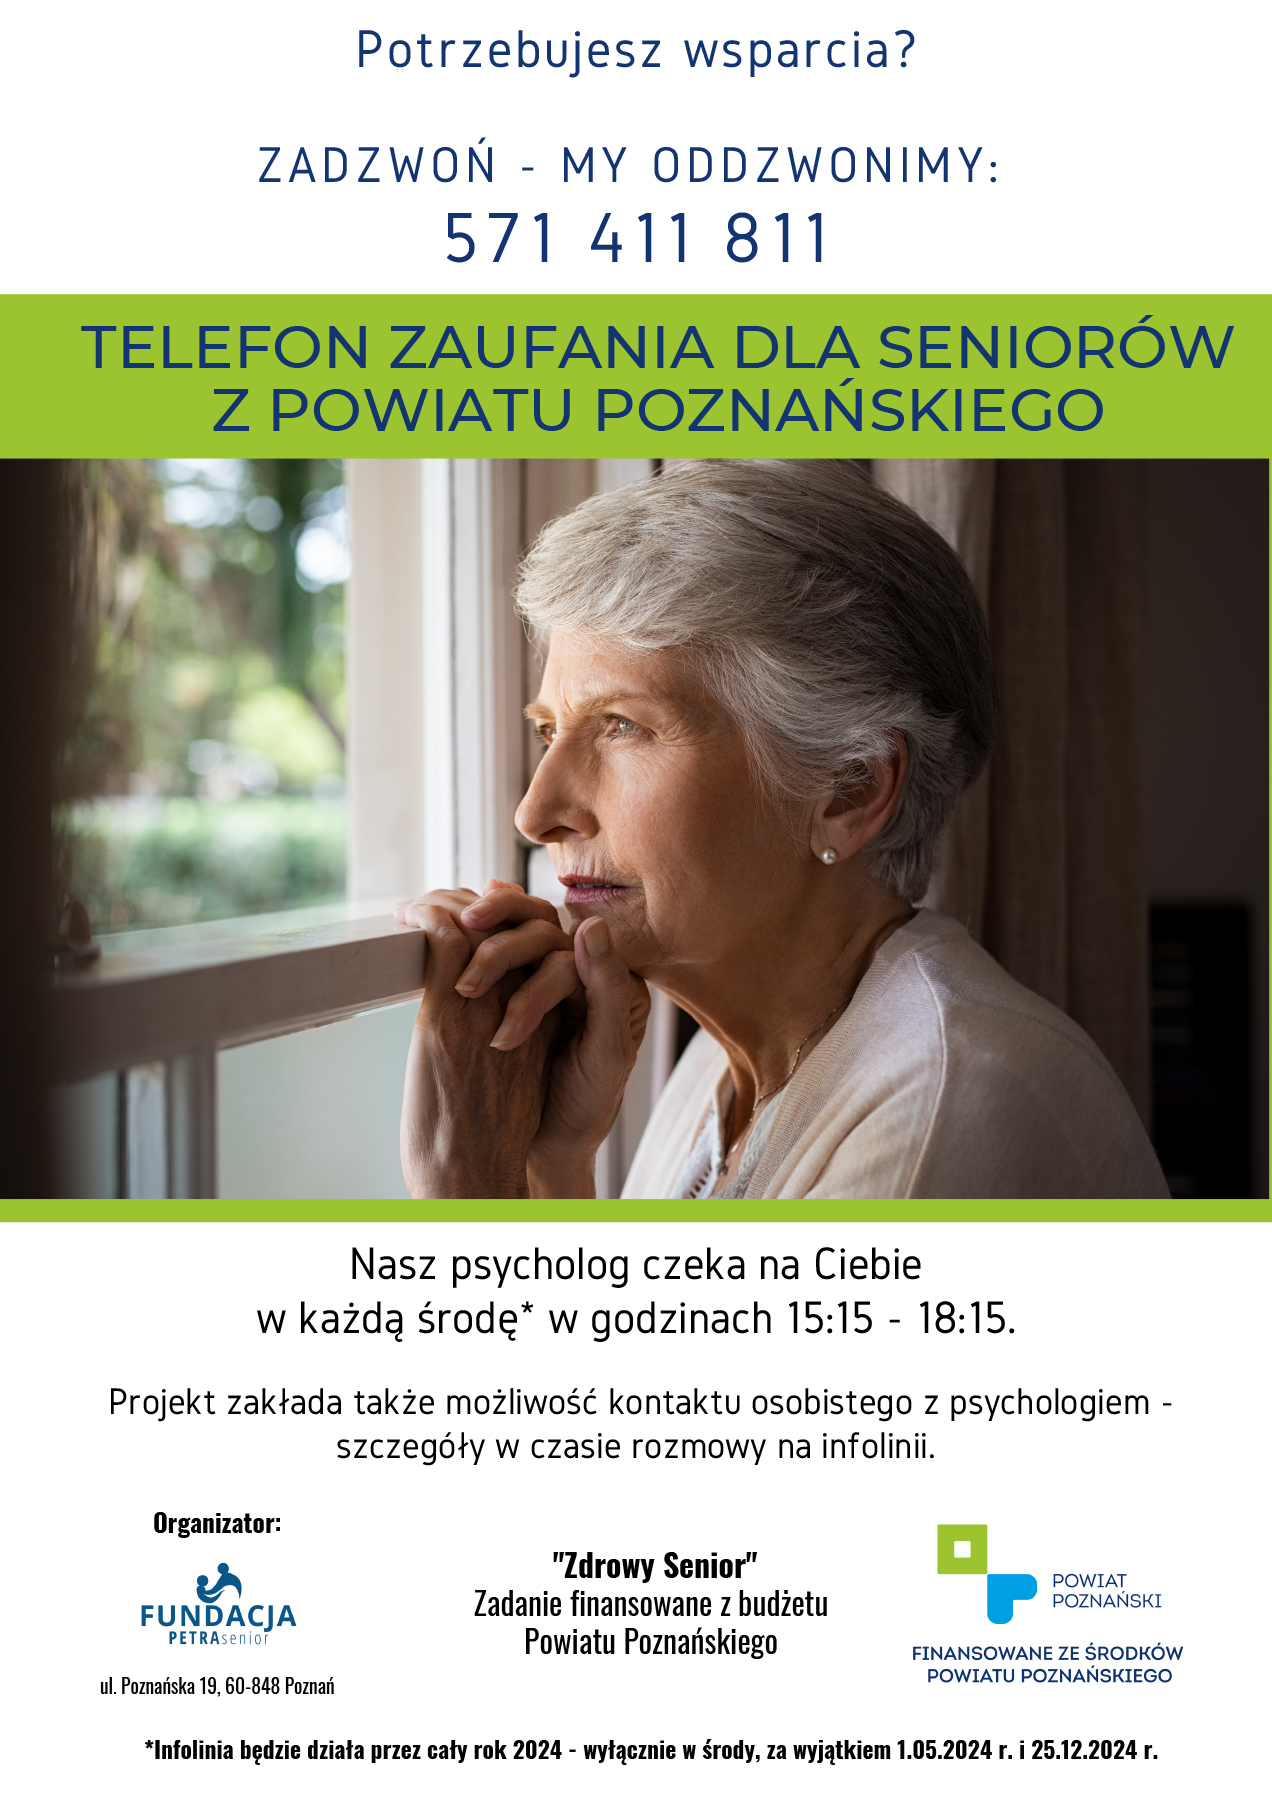 Plakat Zdrowy Senior - Wsparcie psychologiczne dla seniorów